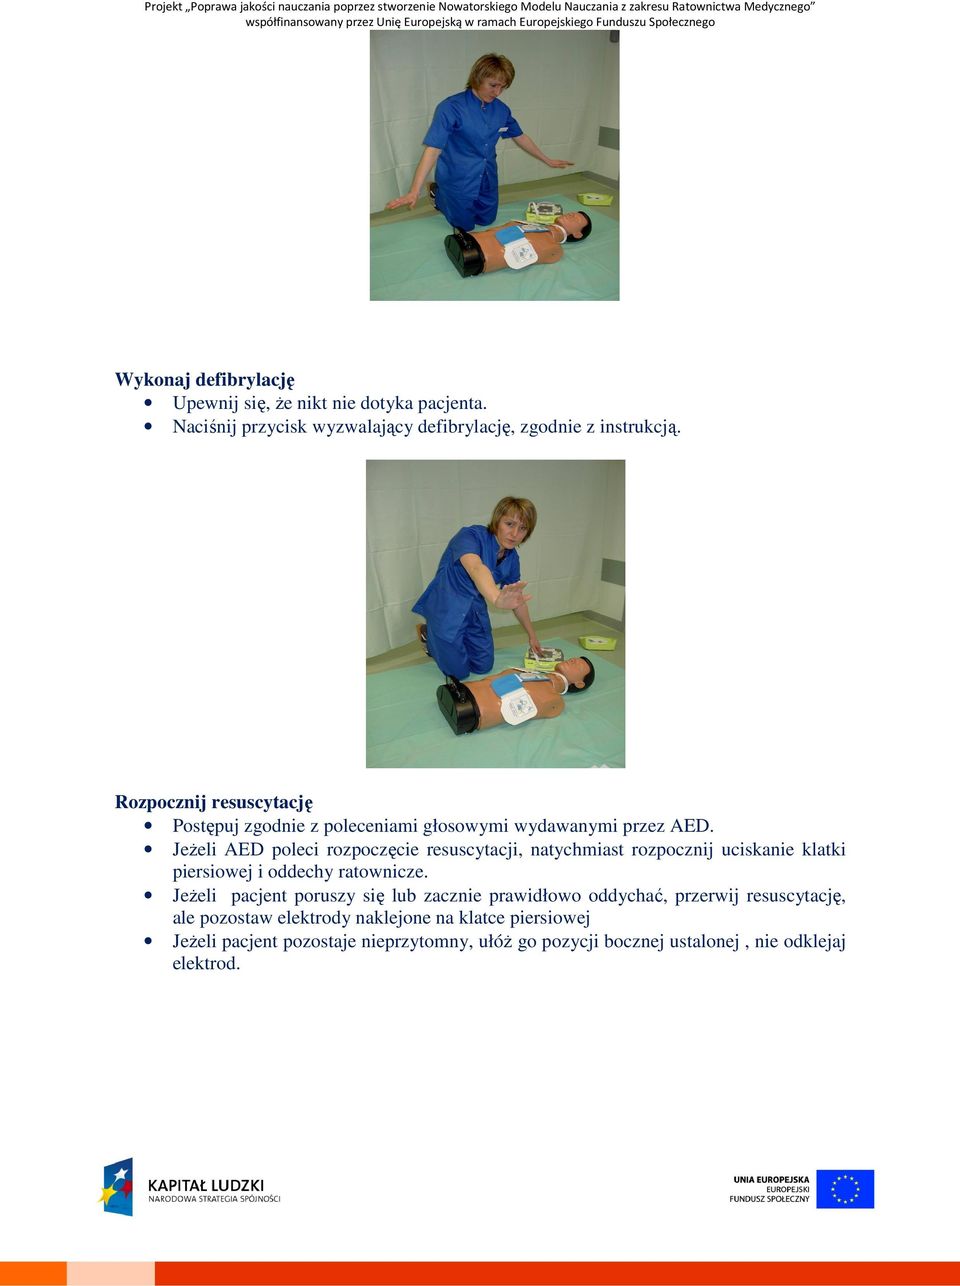 Jeżeli AED poleci rozpoczęcie resuscytacji, natychmiast rozpocznij uciskanie klatki piersiowej i oddechy ratownicze.